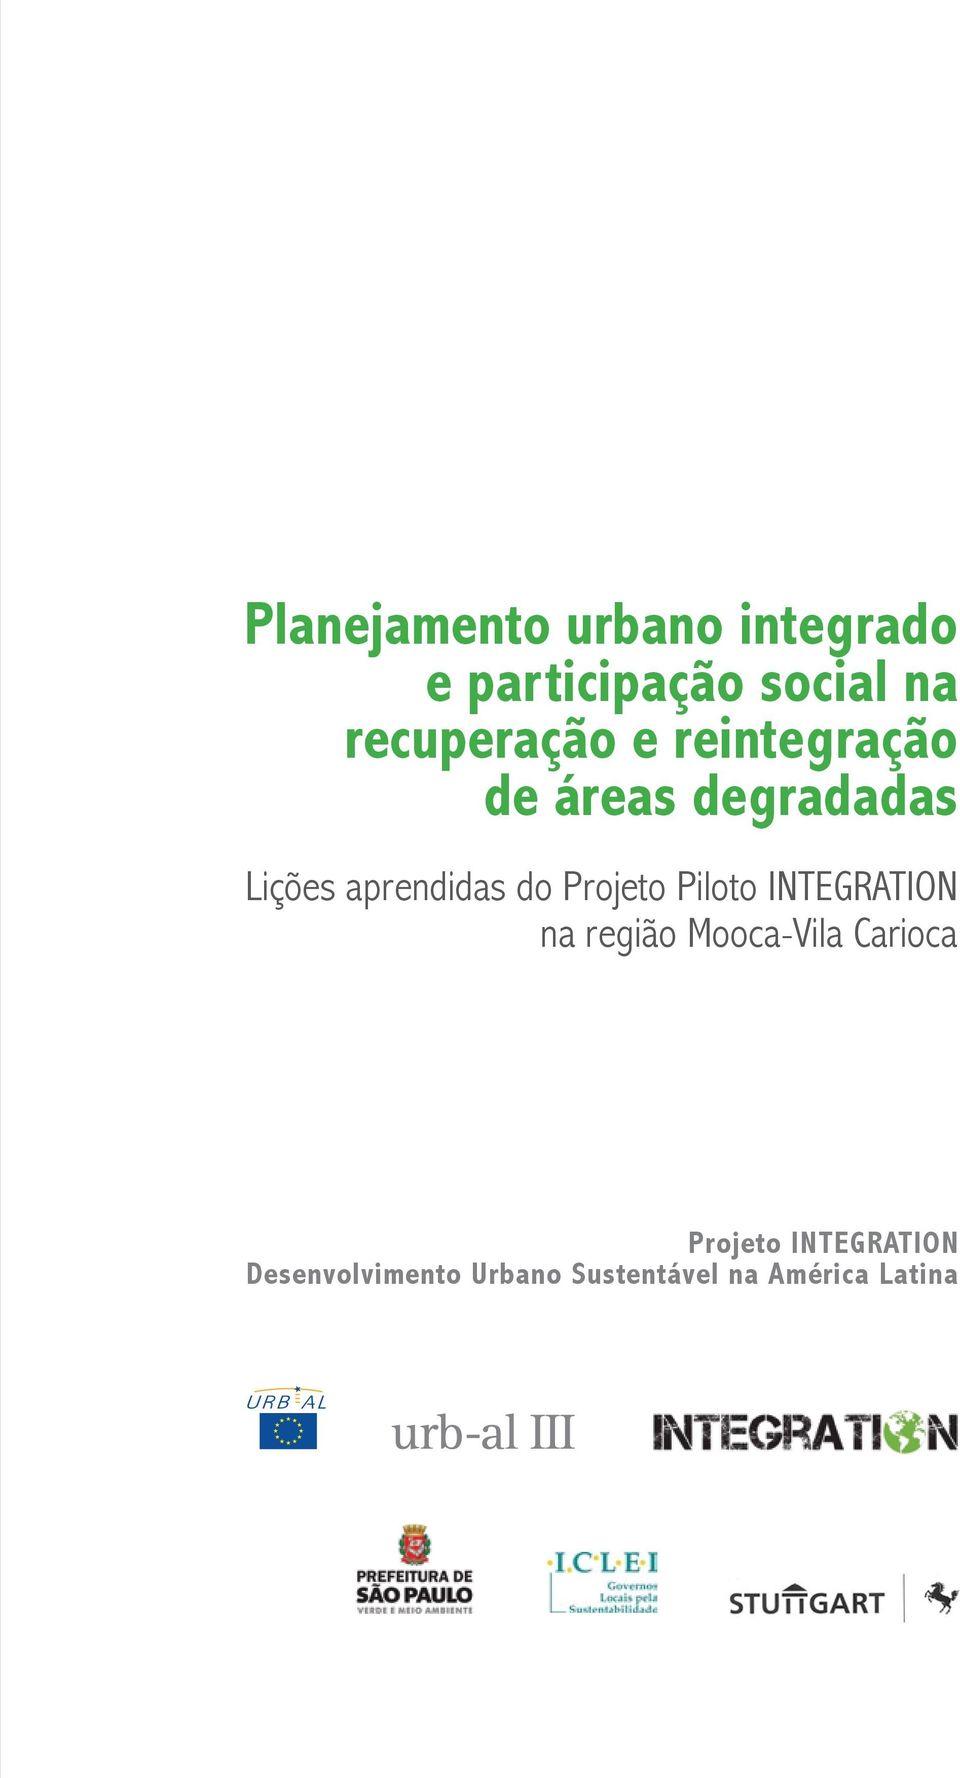 aprendidas do Projeto Piloto INTEGRATION na região Mooca-Vila